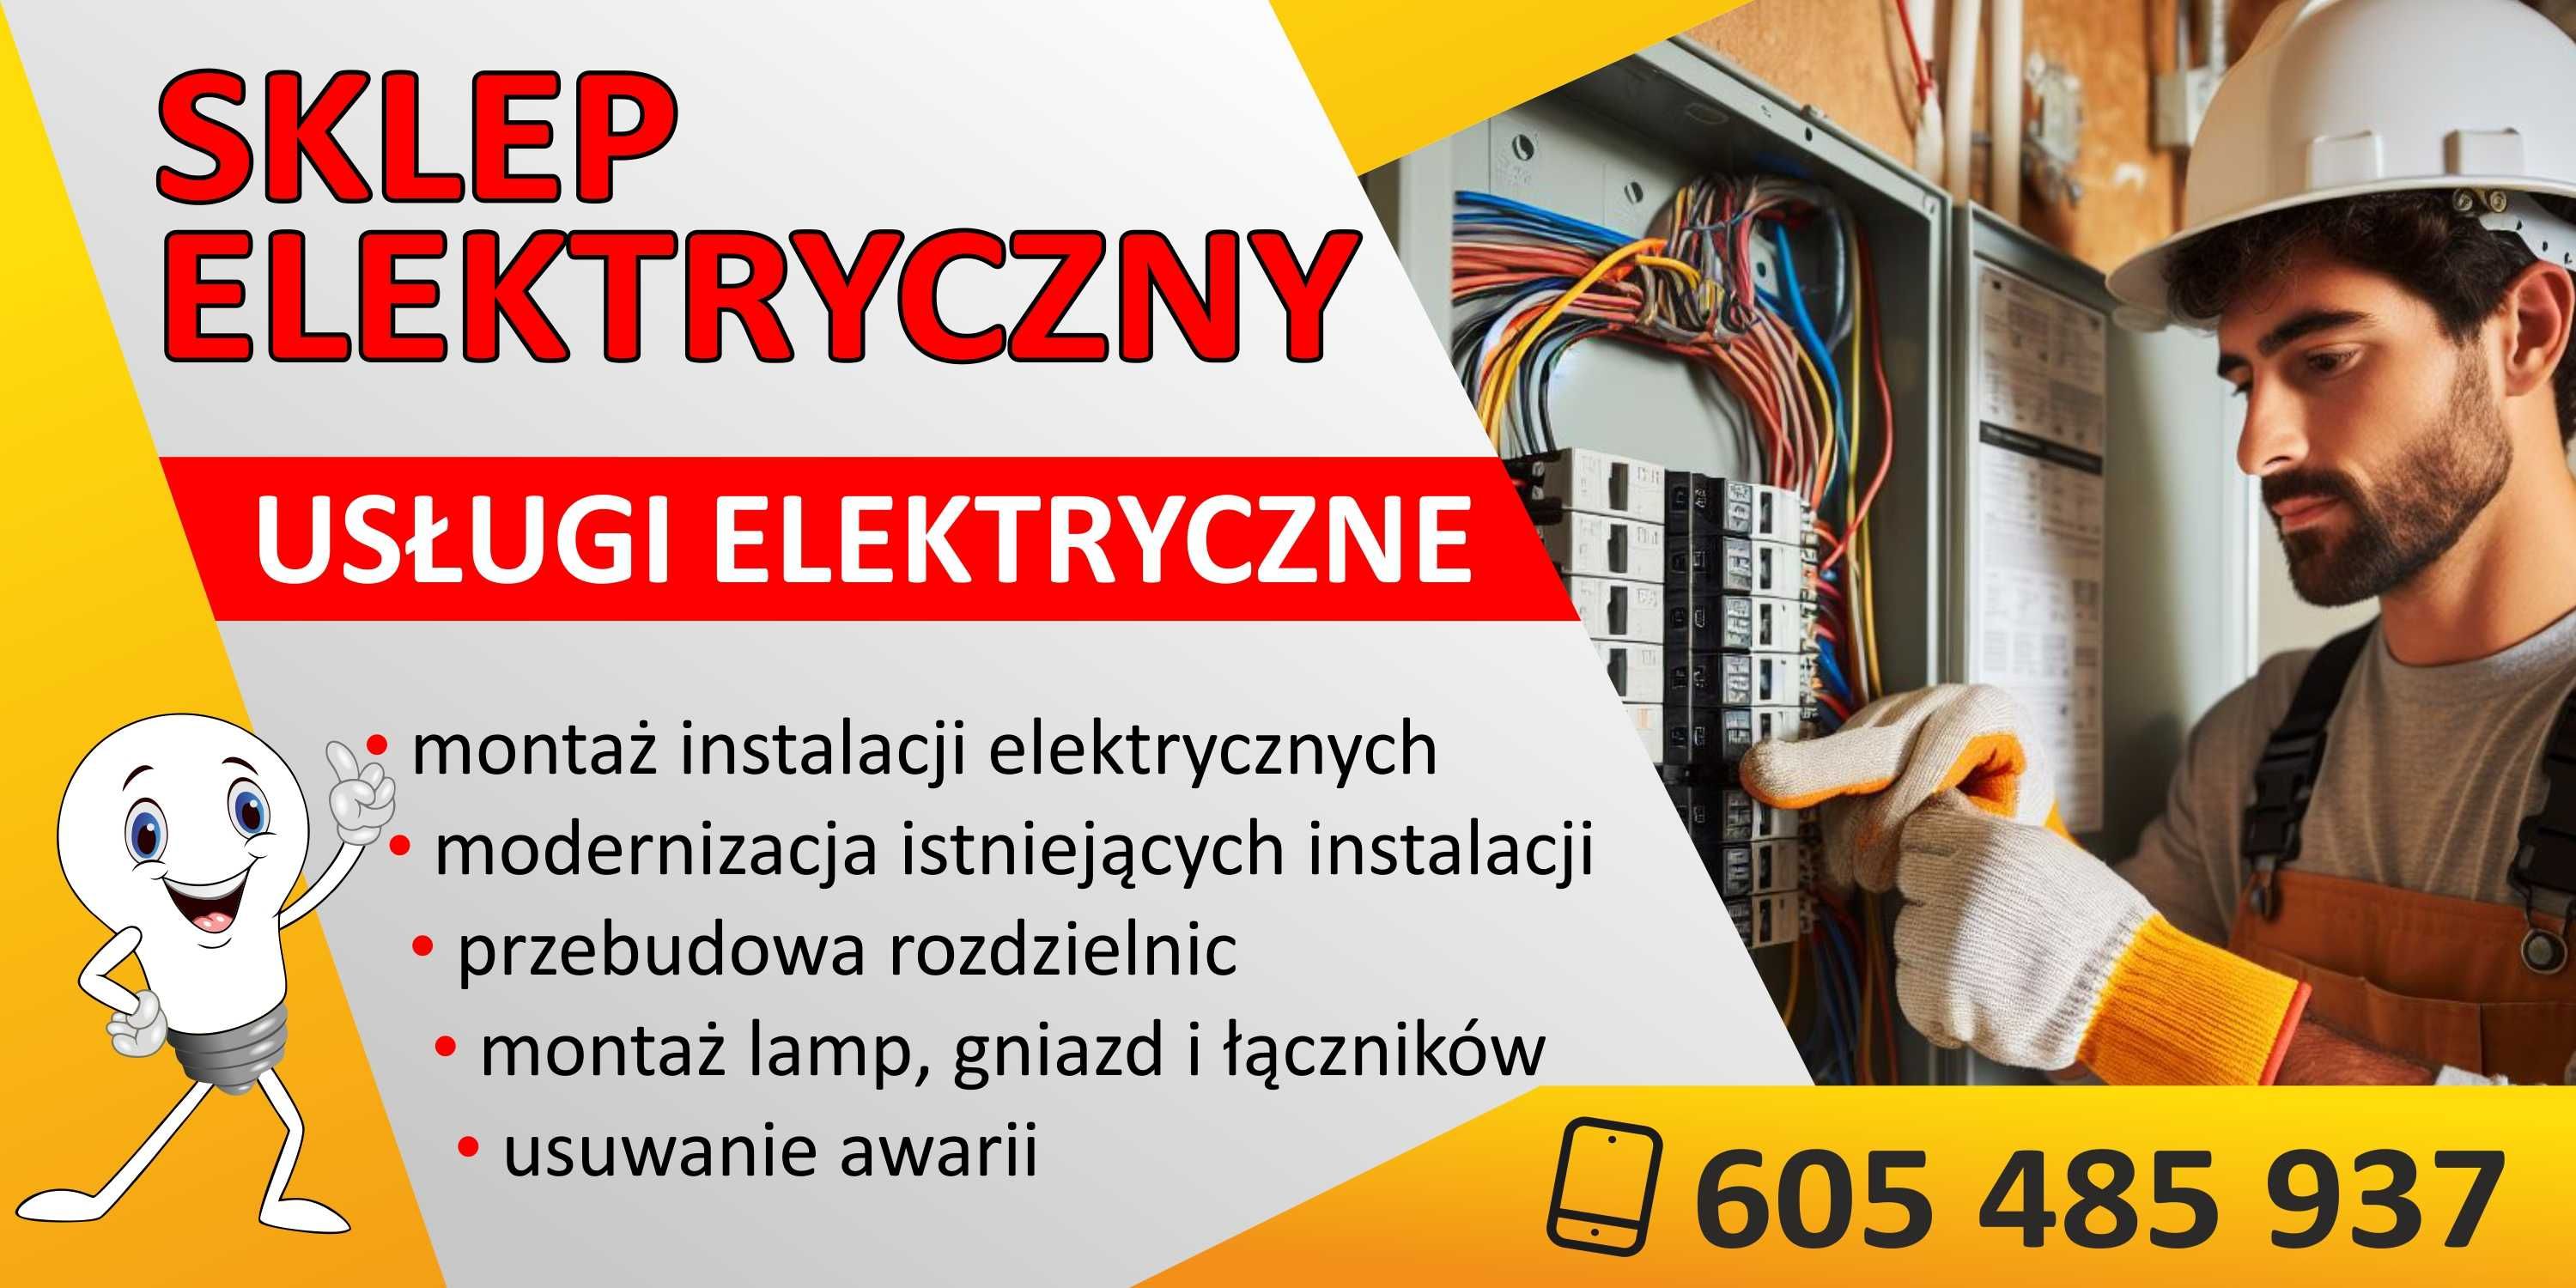 Elektryk/ Usługi Elektryczne/ Sklep, Nowe i okolice